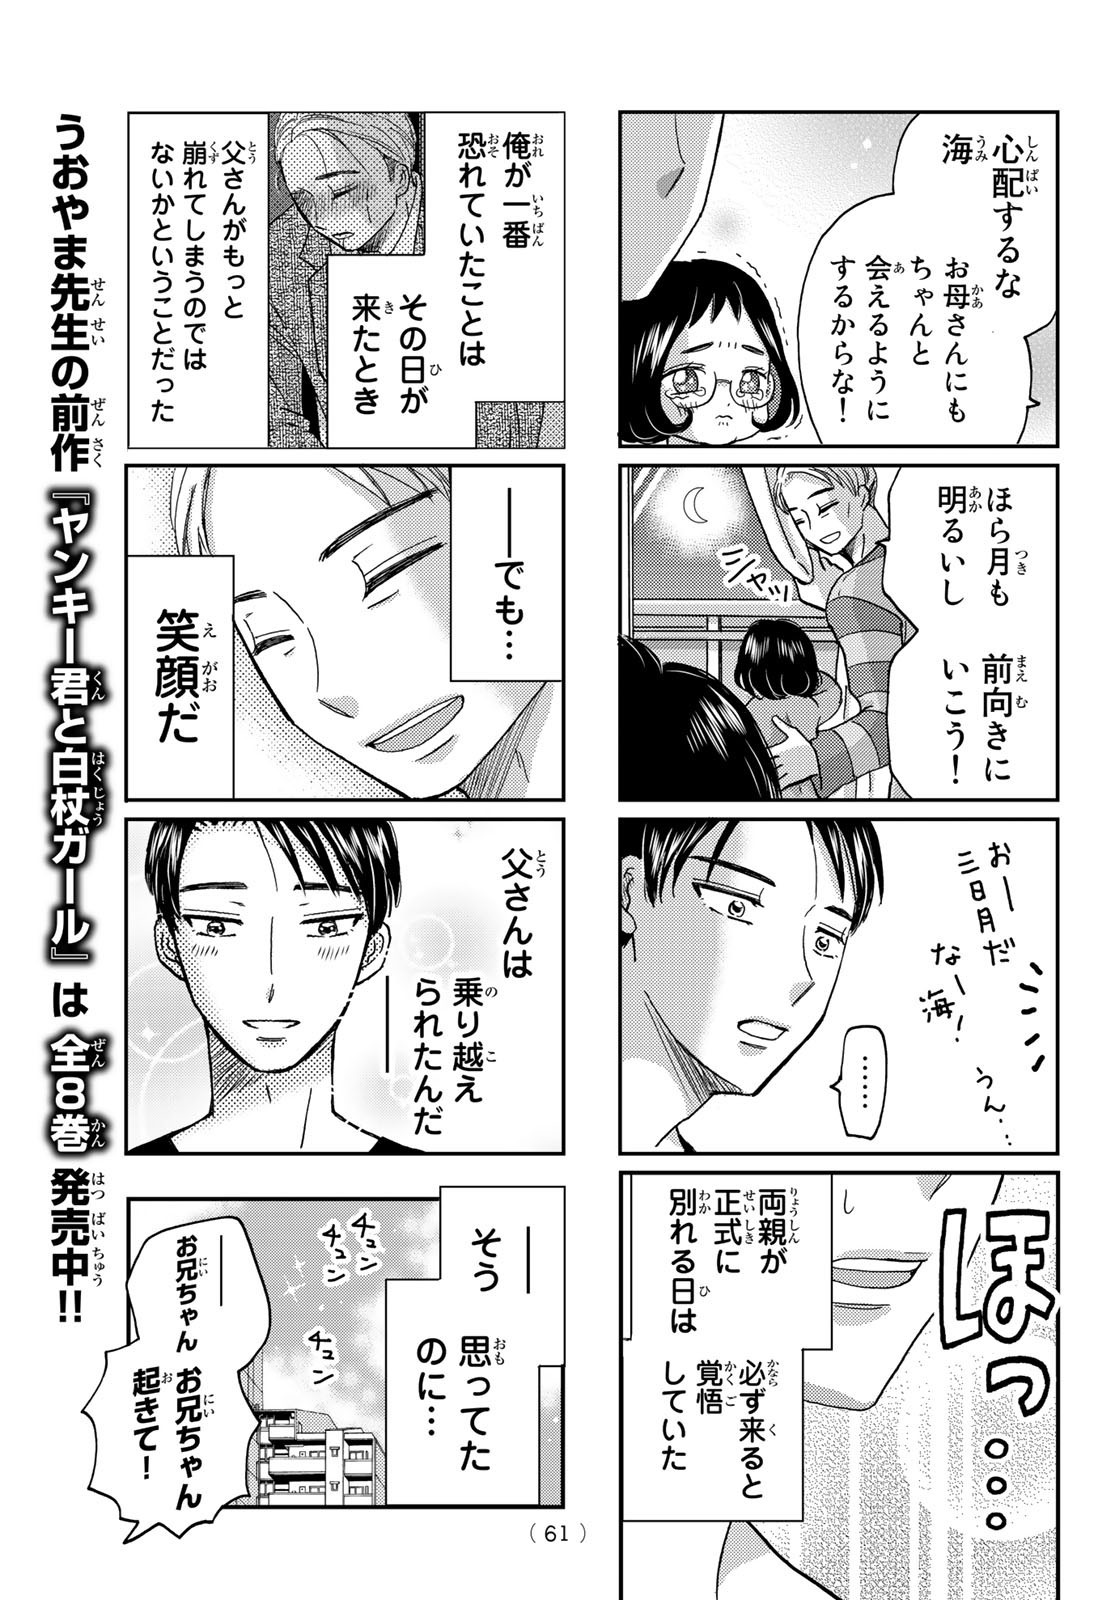 Hinata-san, Hoshino desu. - Chapter 010 - Page 9